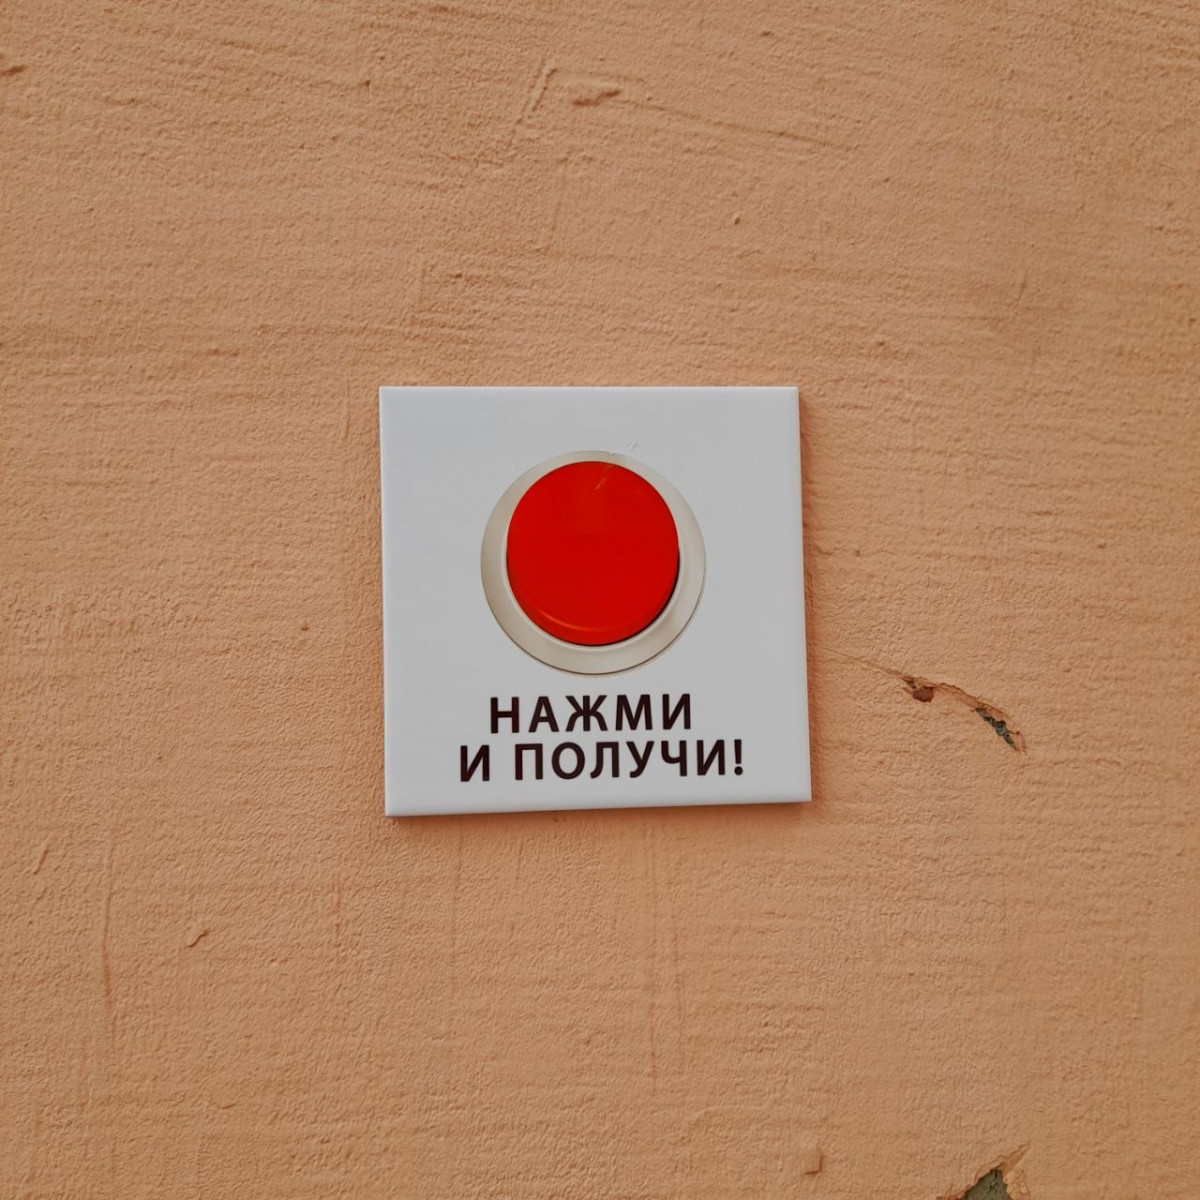 «Кнопка исполнения желаний» появилась в арке дома в Нижнем Новгороде